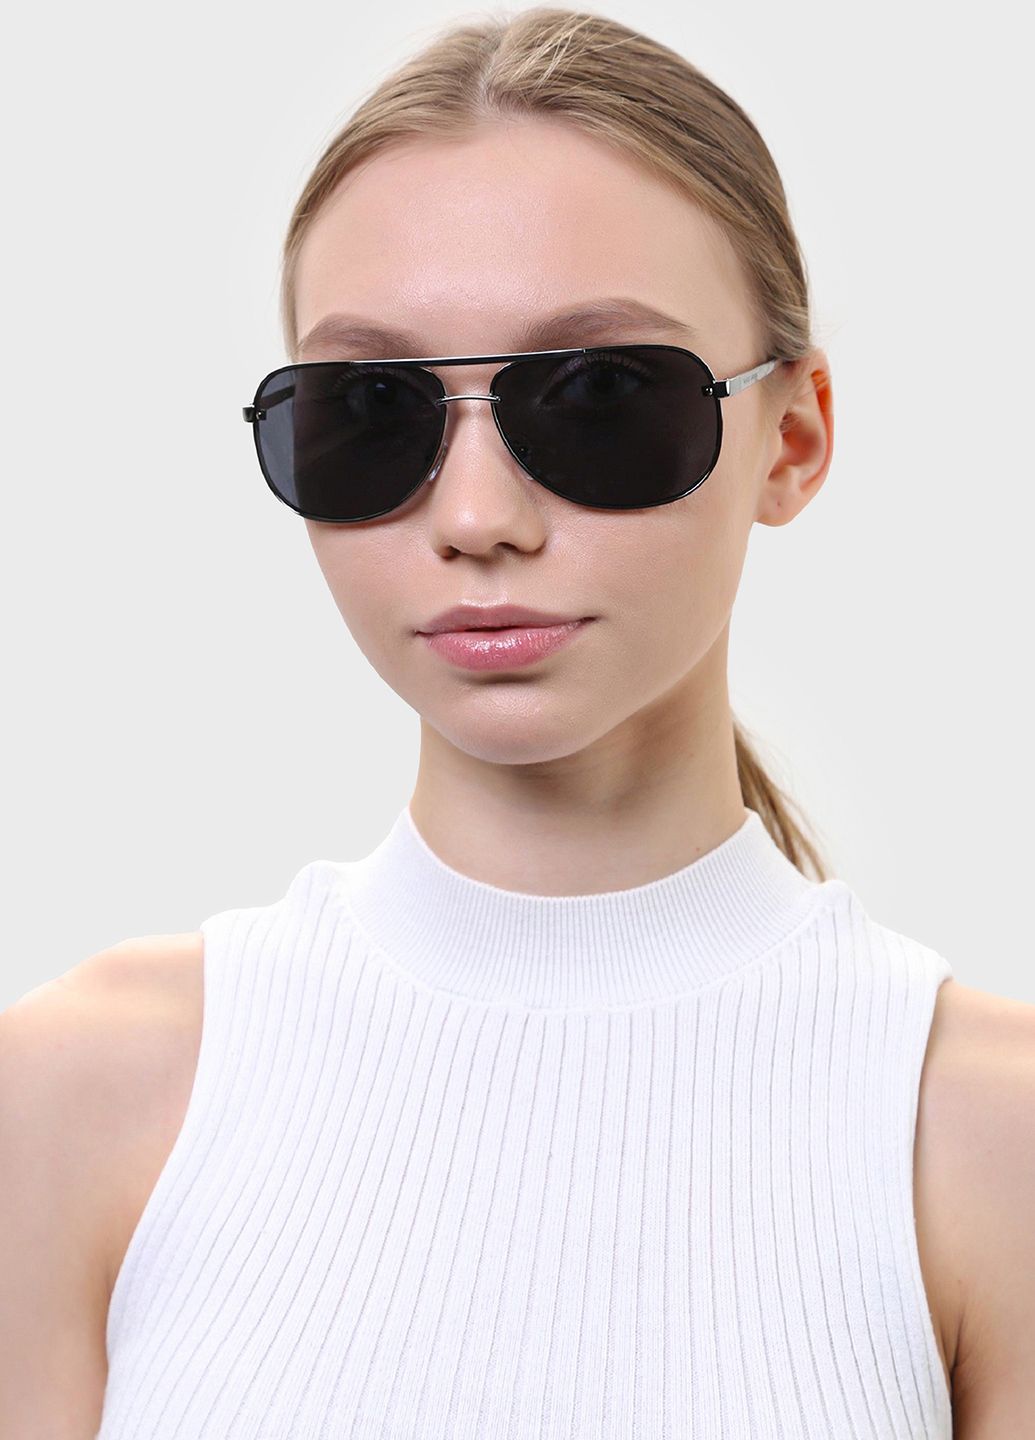 Купить Мужские солнцезащитные очки Marc John с поляризацией MJ0797 190038 - Серый в интернет-магазине